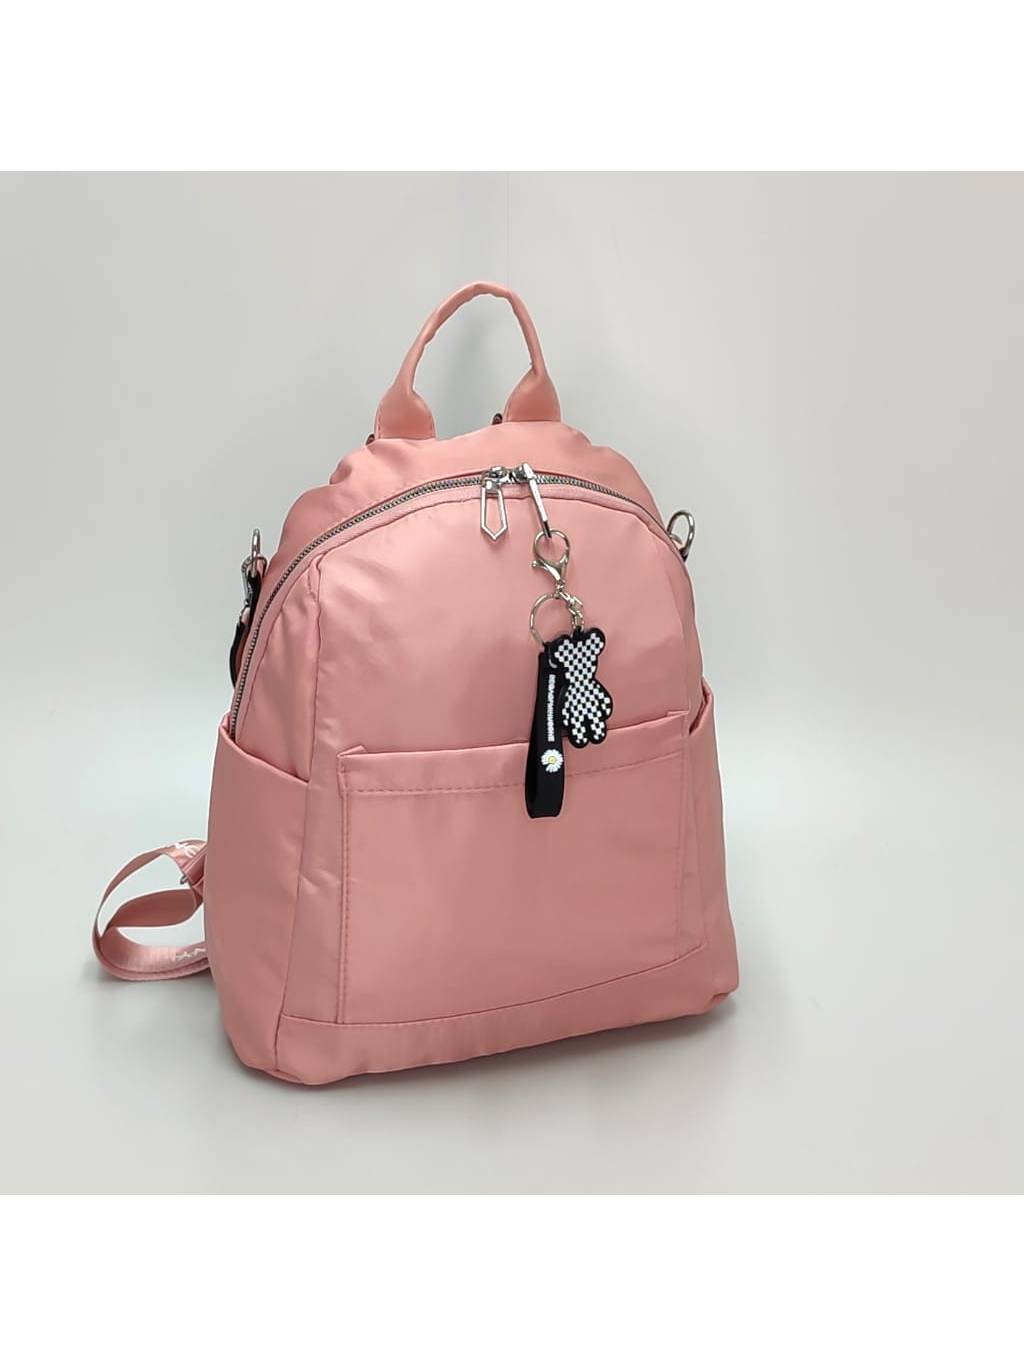 Dámsky ruksak 2v1 3060 svetlo ružový www.kabelky vypredaj (2)